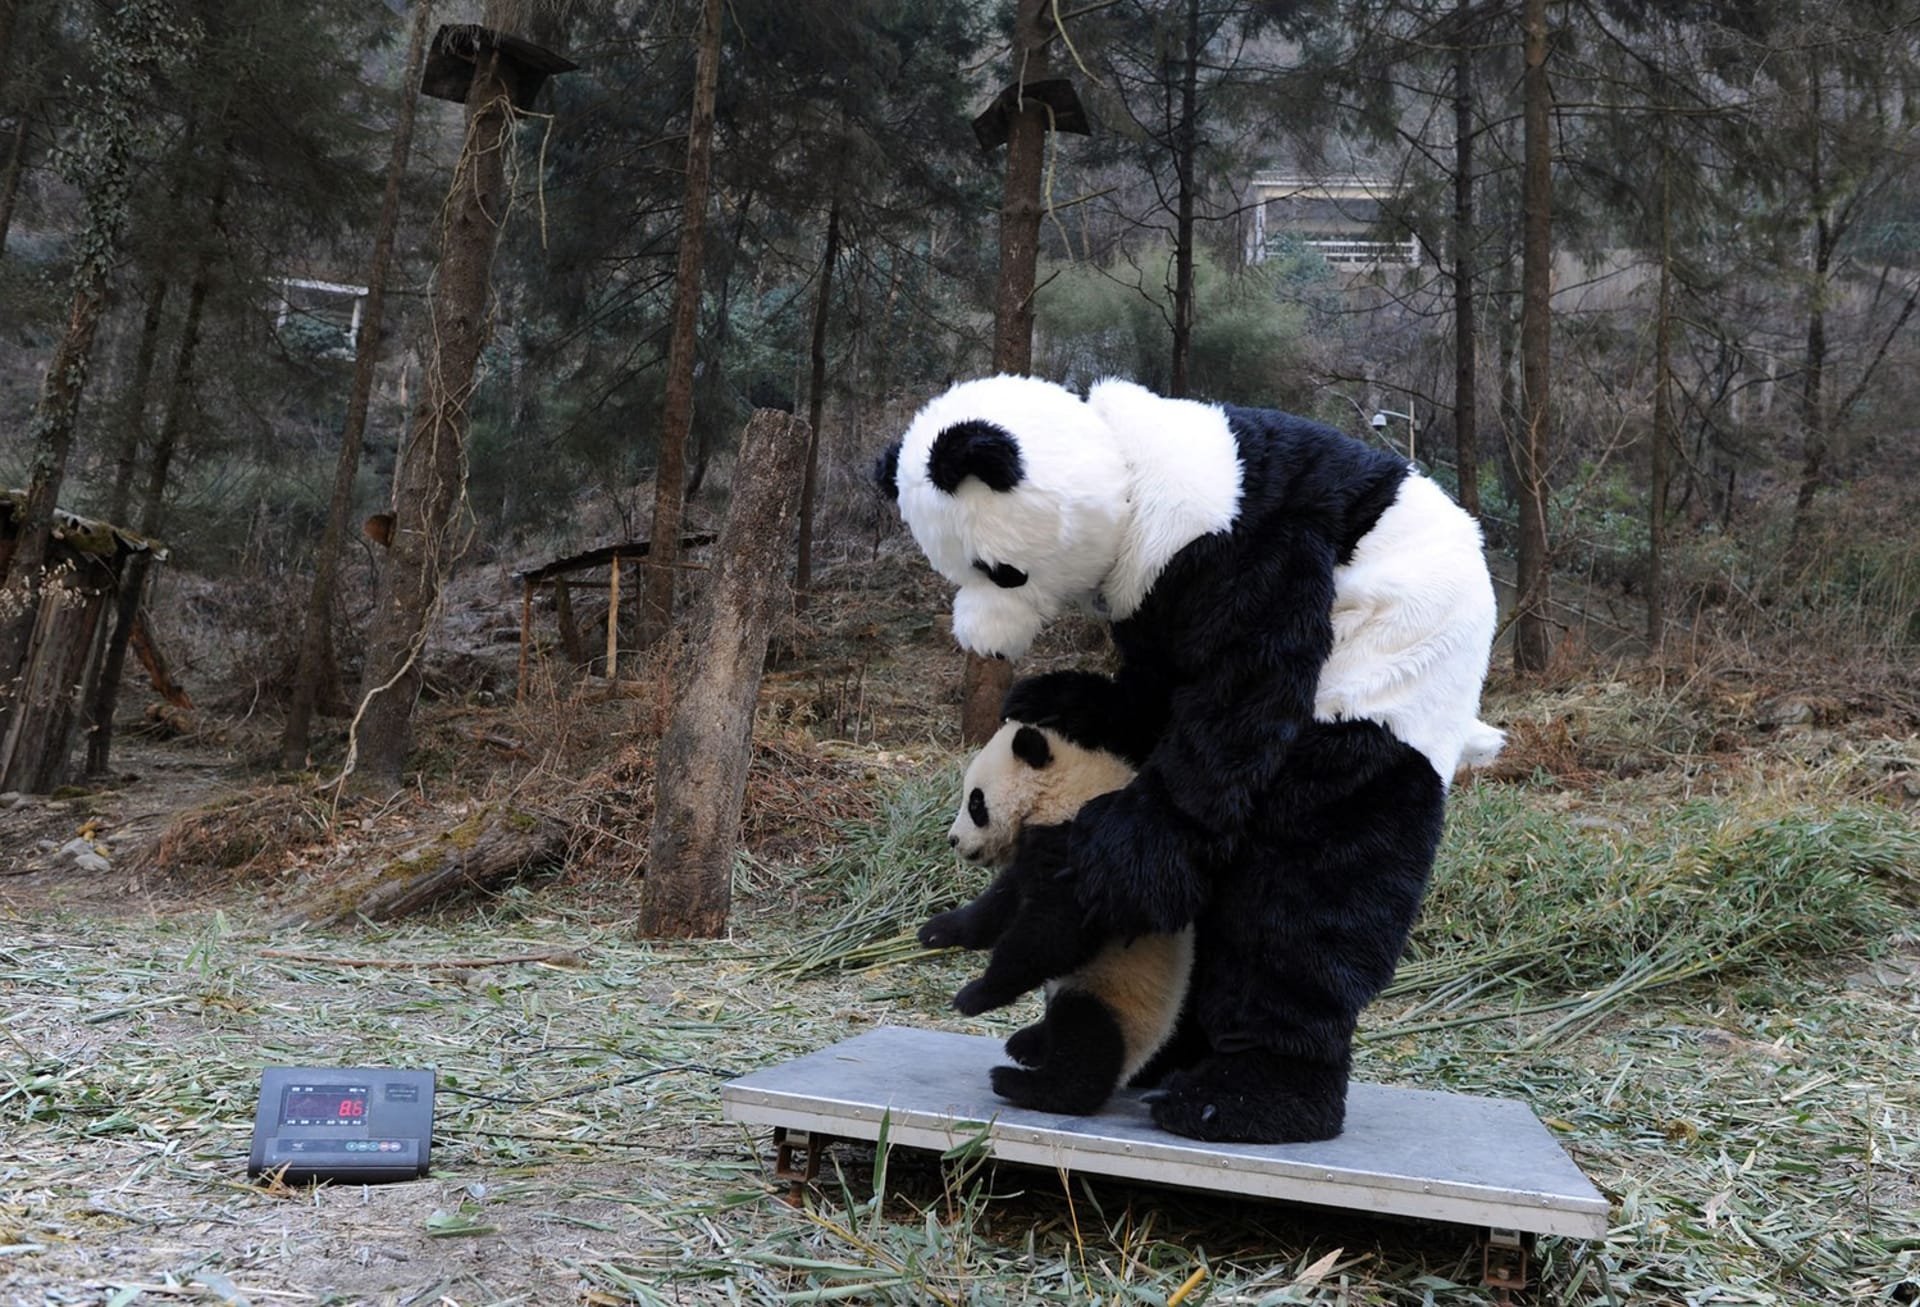 Ošetřovatelé nosí speciální obleky připomínající právě pandy, aby si mláďata nezvykala na přítomnost lidí. Zdroj: China Daily